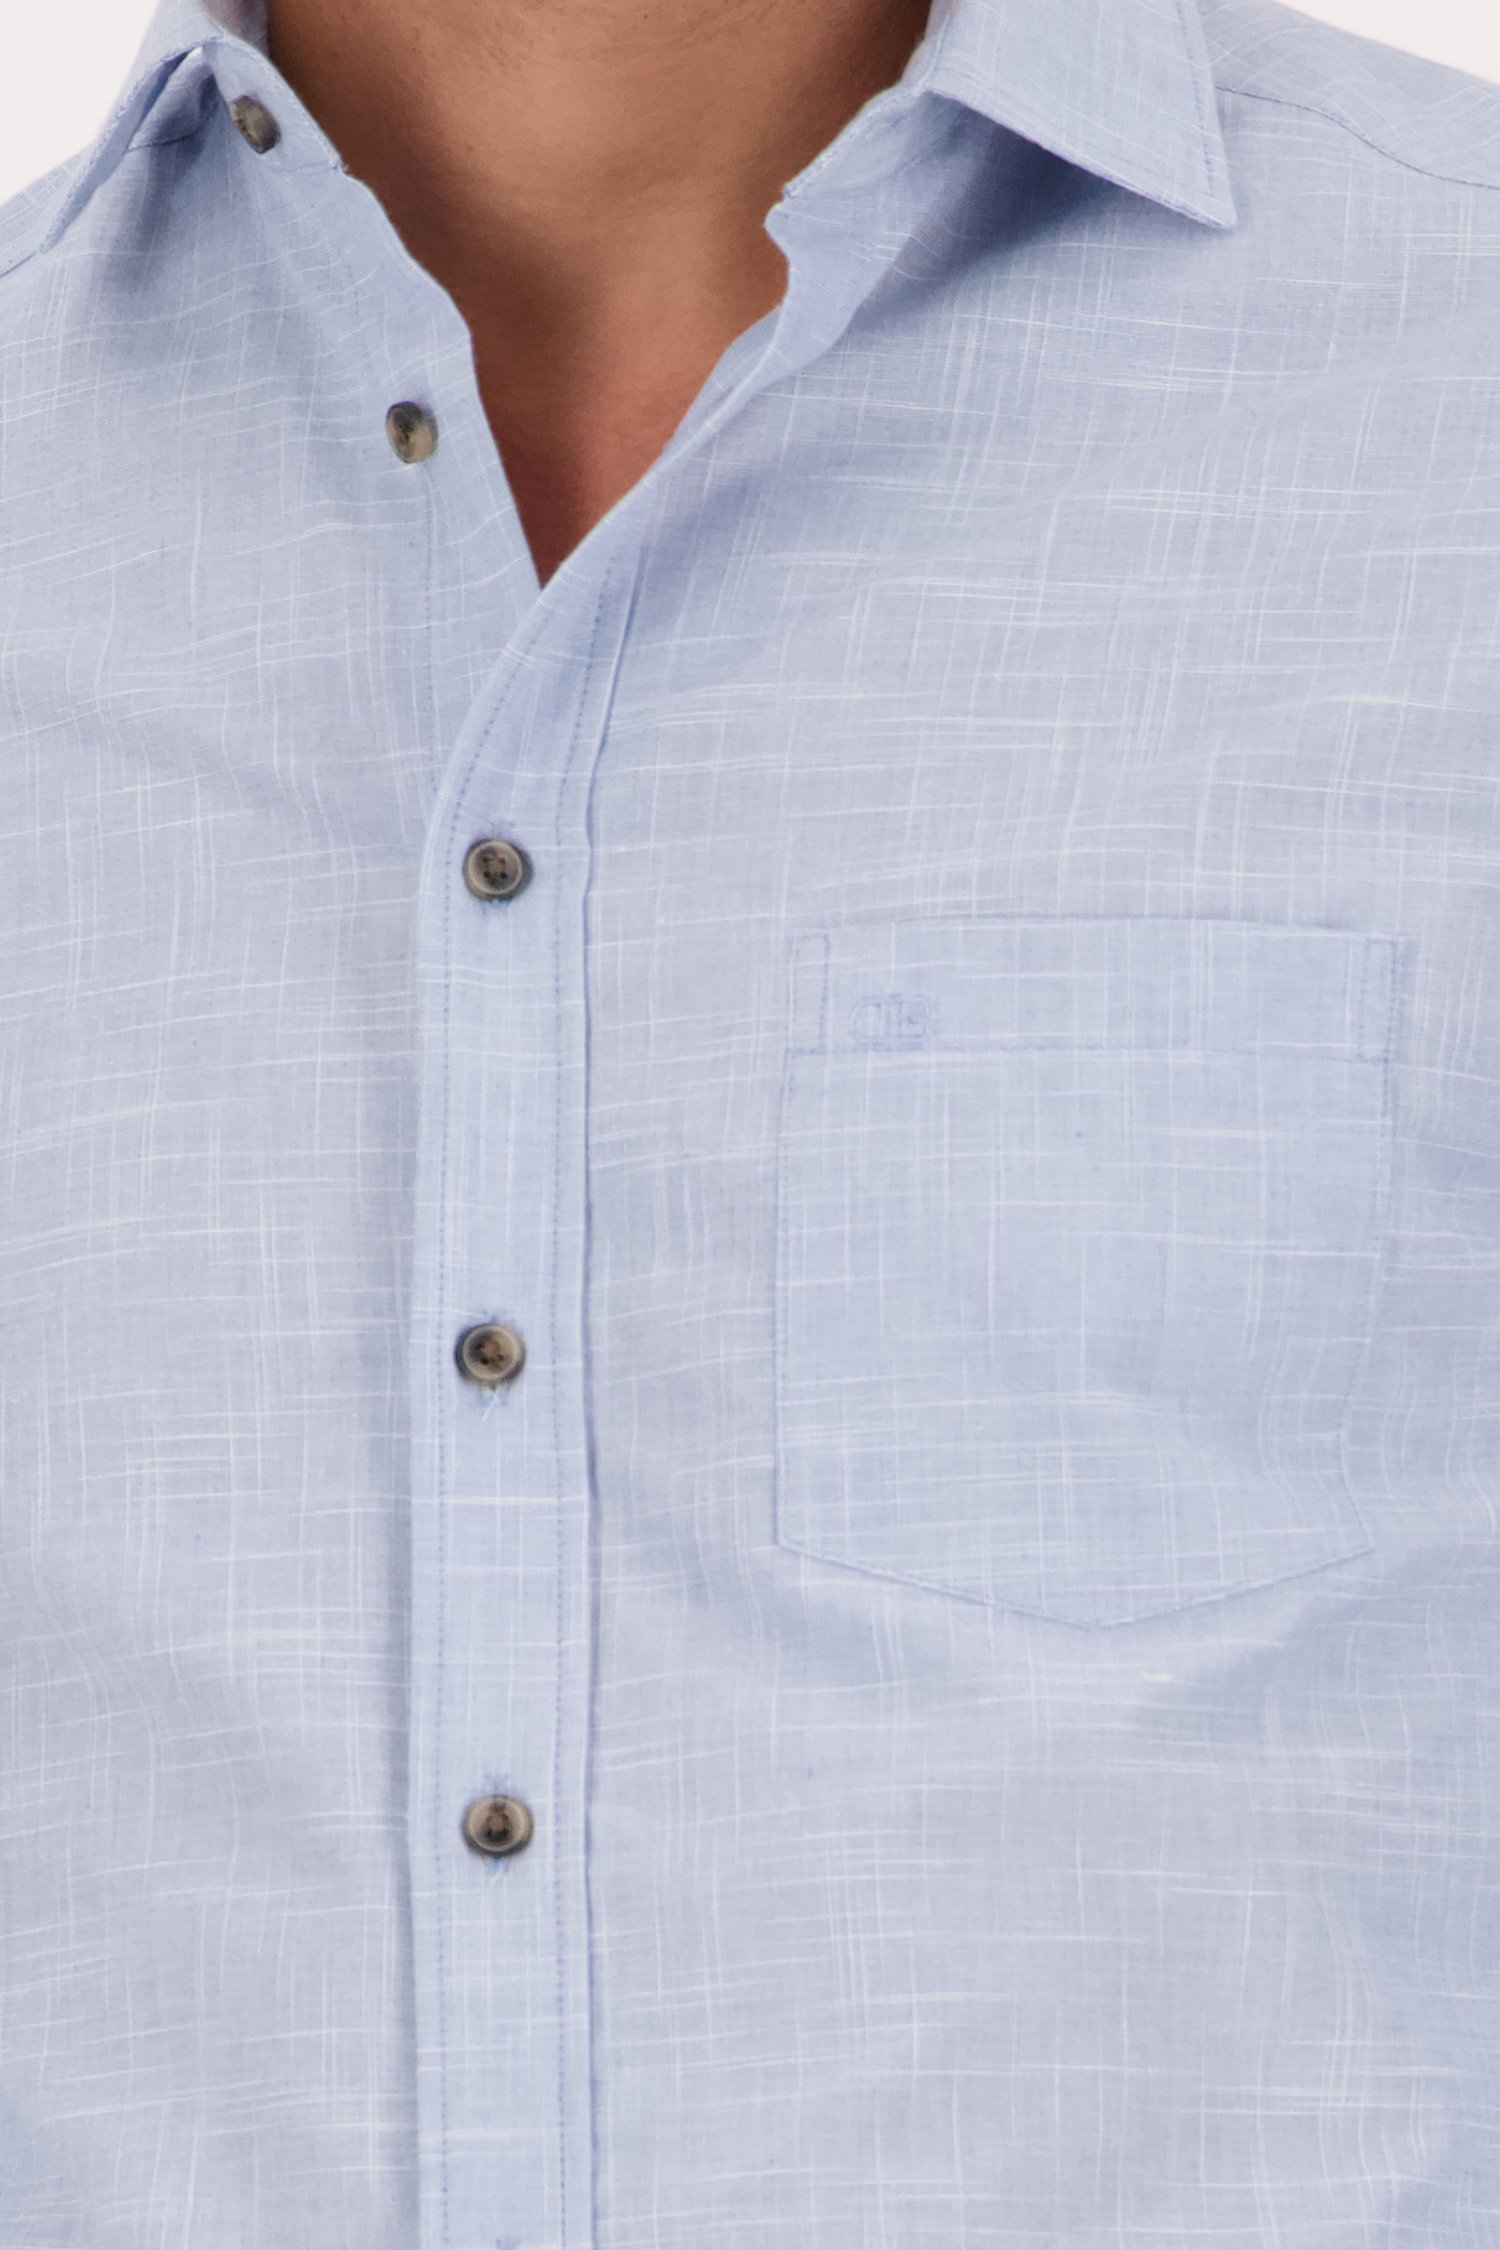 Lichtblauw, fijn gestreept hemd - Regular fit van Dansaert Blue voor Heren